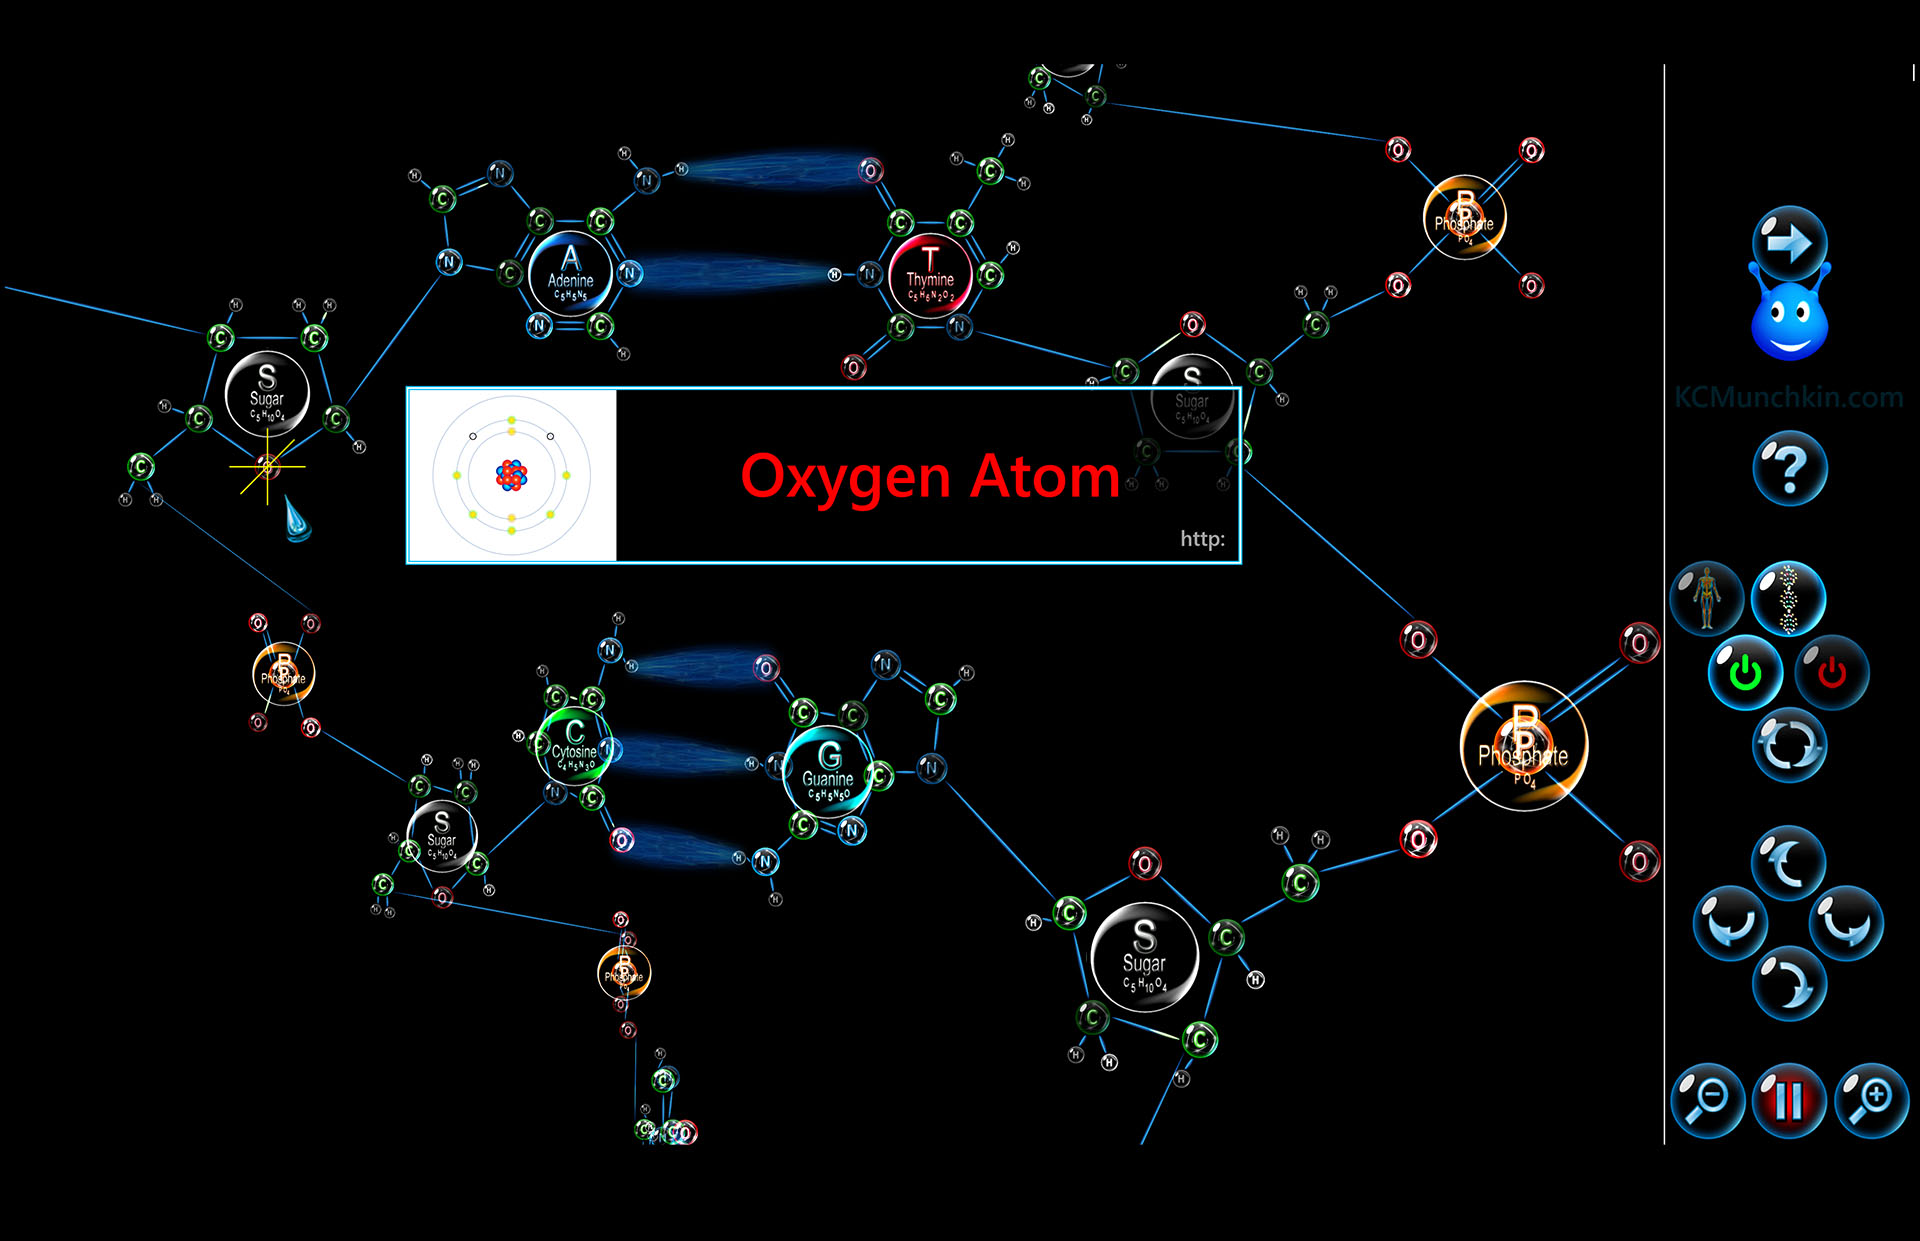 depiction of oxygen atom in DNA